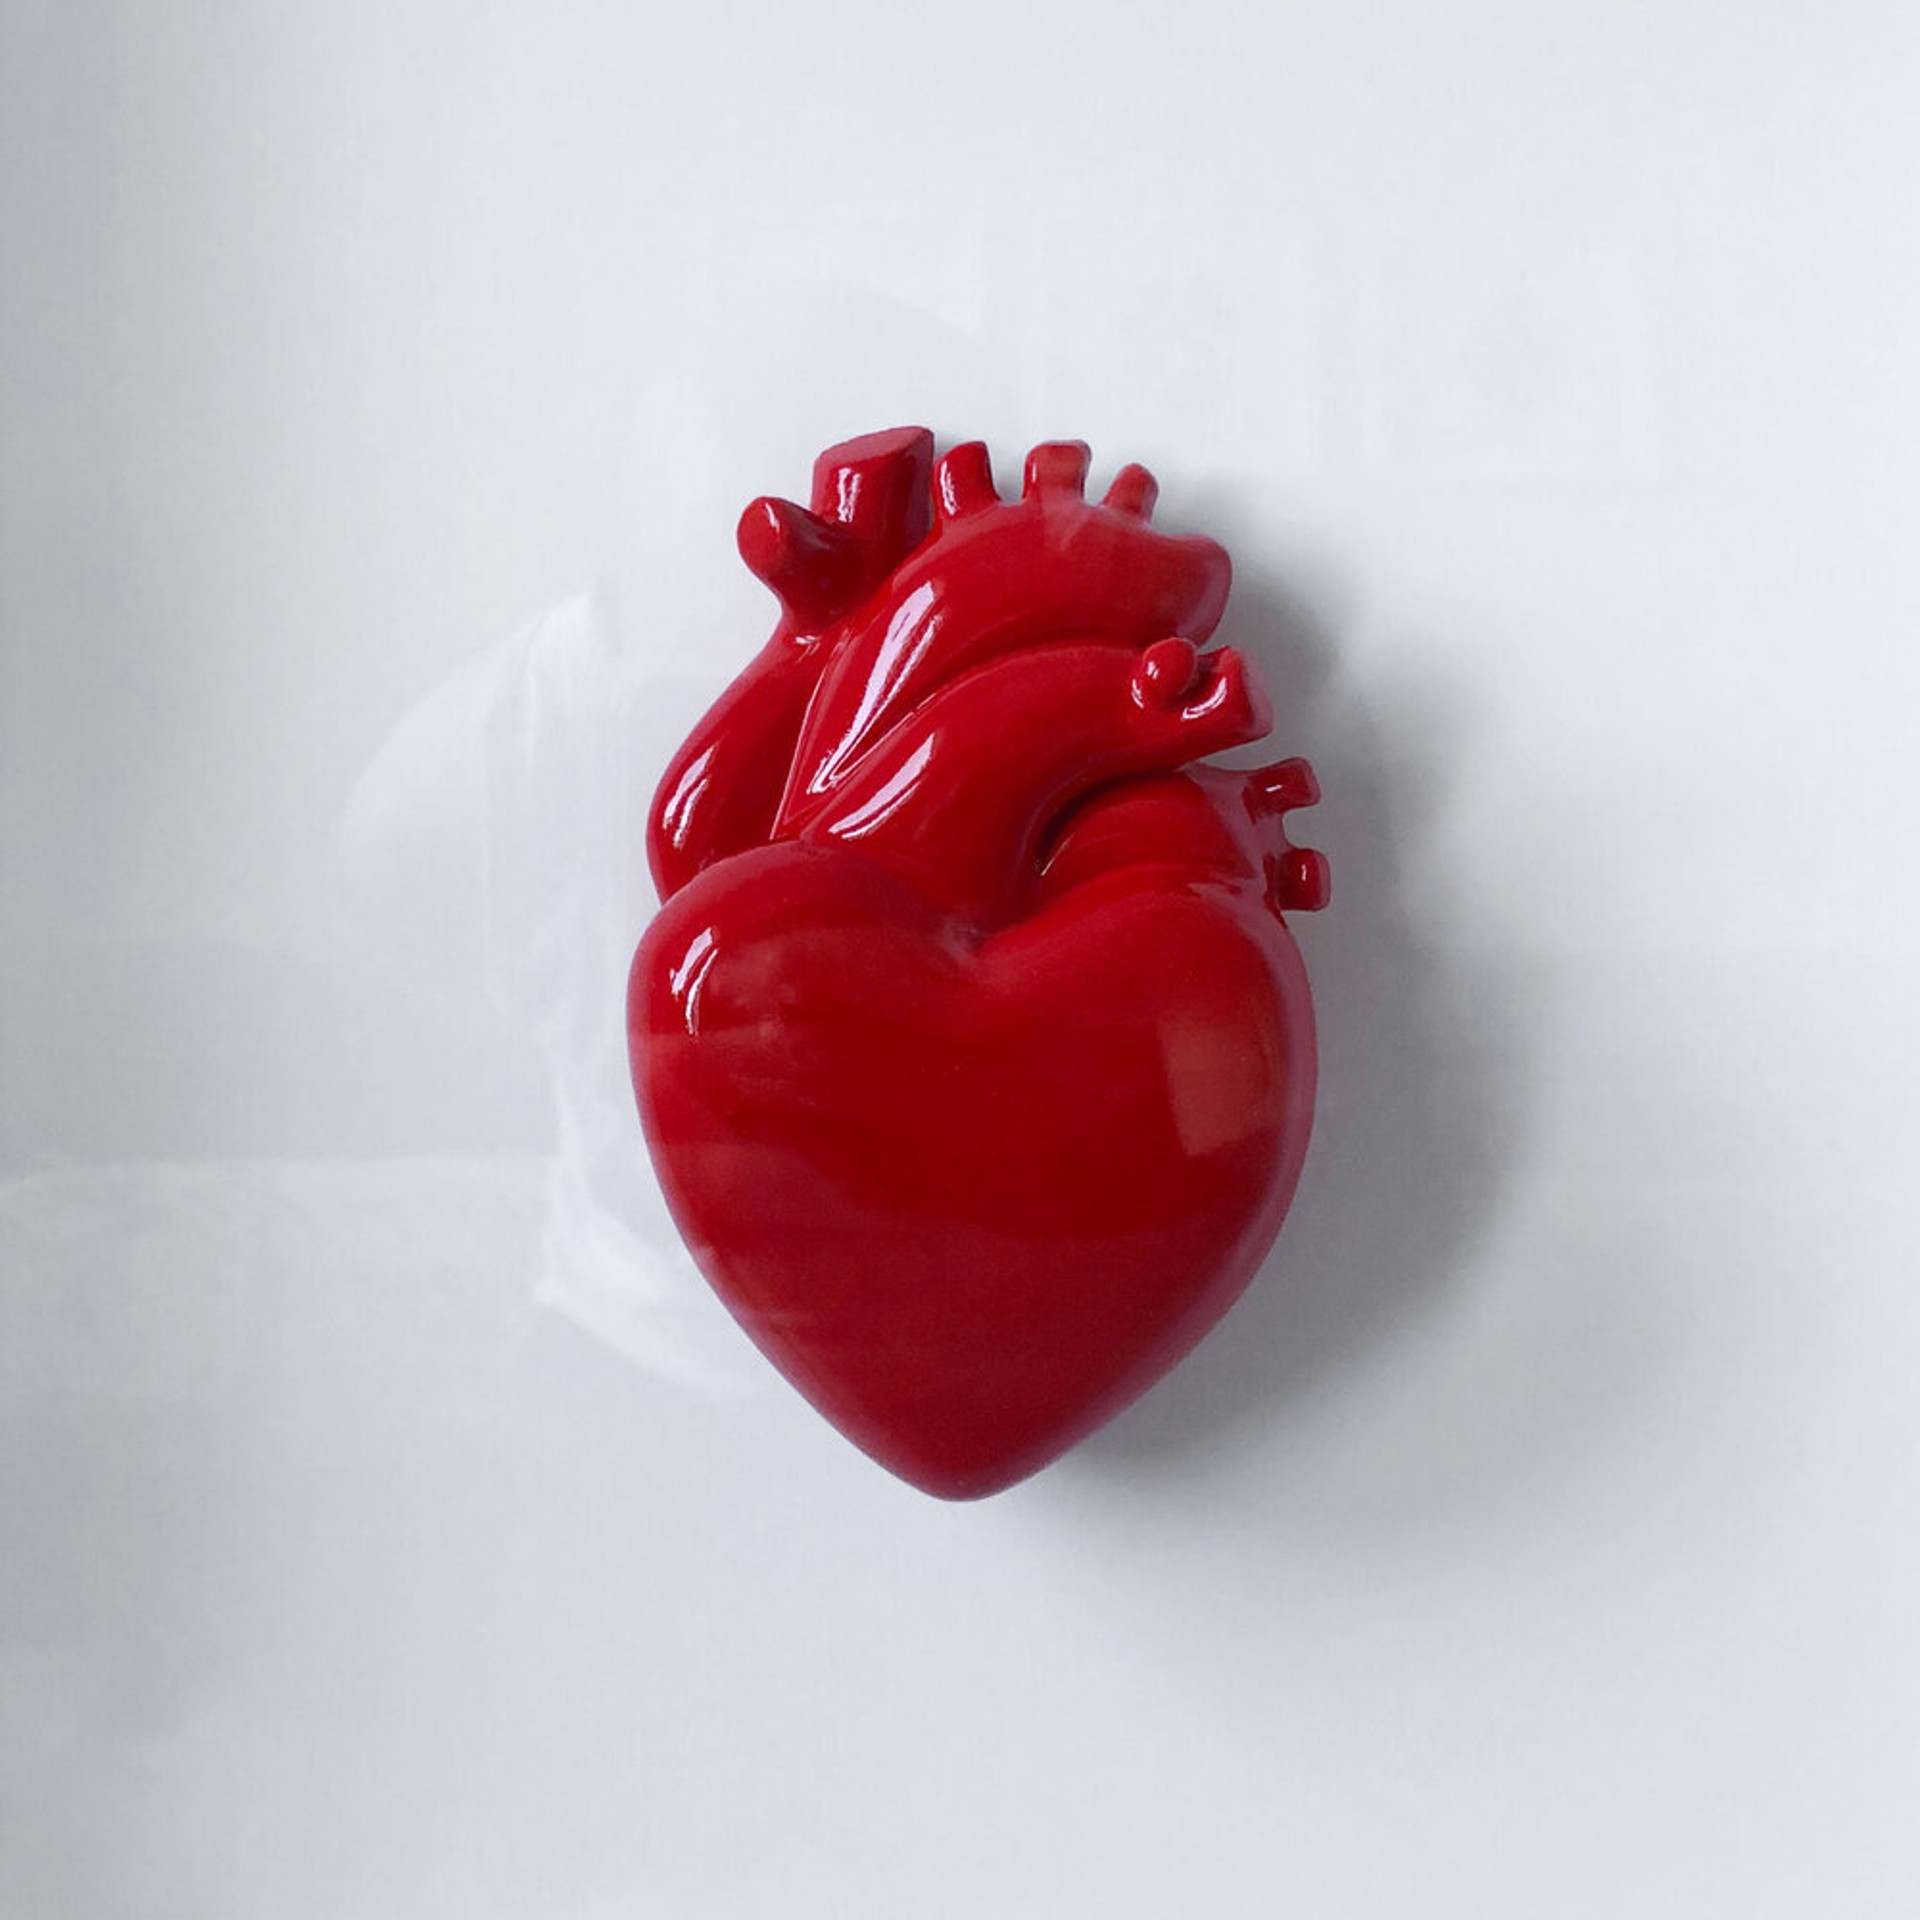 Heart work (Mitra Commission) by David Schwartz